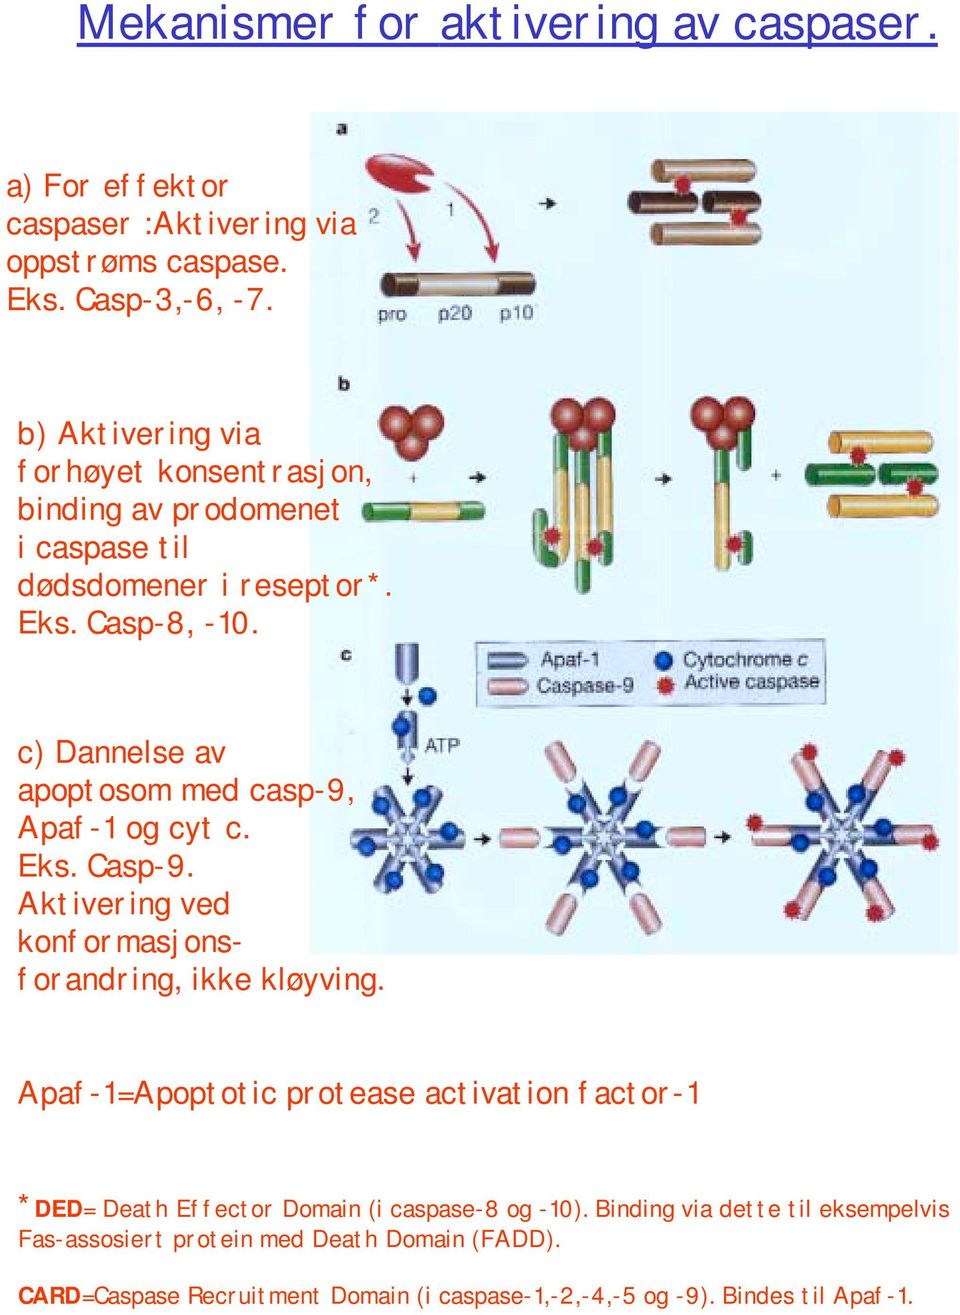 c) Dannelse av apoptosom med casp-9, Apaf-1 og cyt c. Eks. Casp-9. Aktivering ved konformasjonsforandring, ikke kløyving.